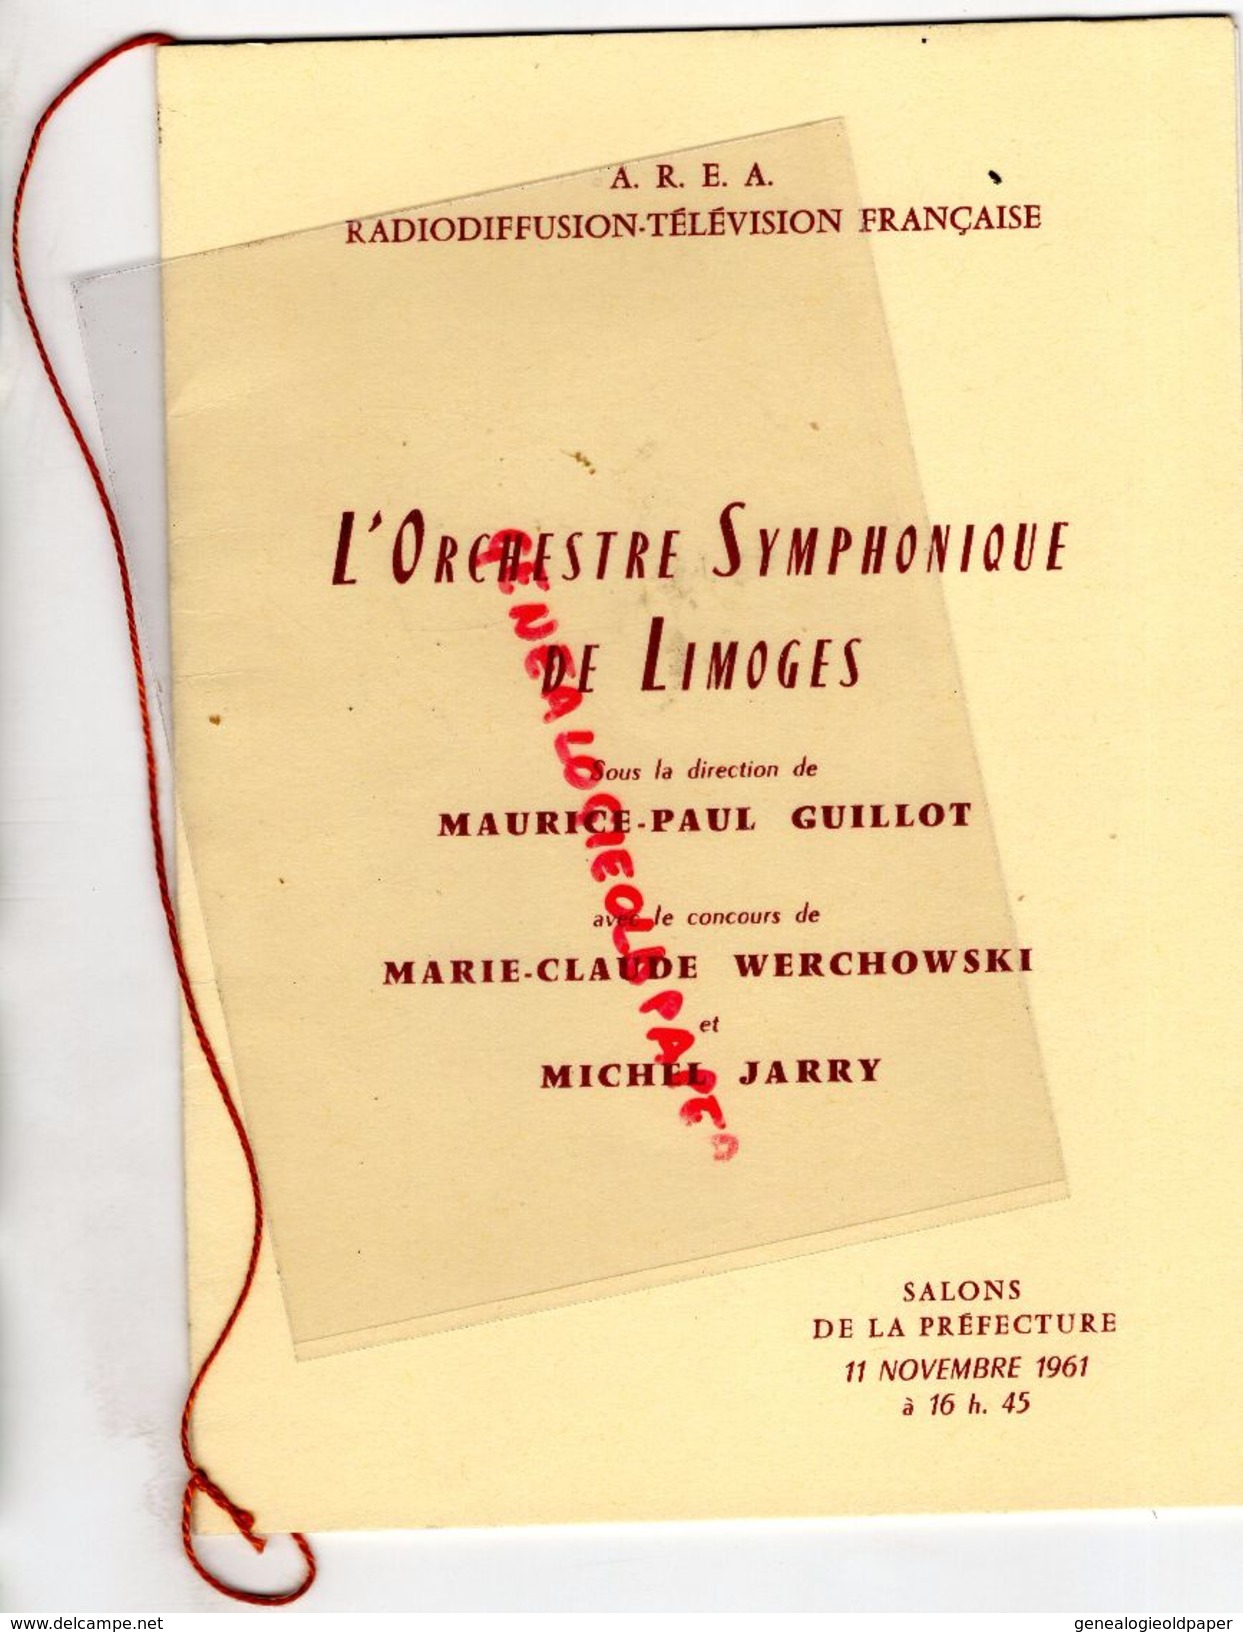 87 - LIMOGES - PROGRAMME ORCHESTRE SYMPHONIQUE -MAURICE PAUL GUILLOT-MARIE CLAUDE WERCHOWSKI-MICHEL JARRY-11-11-1961 - Programmi